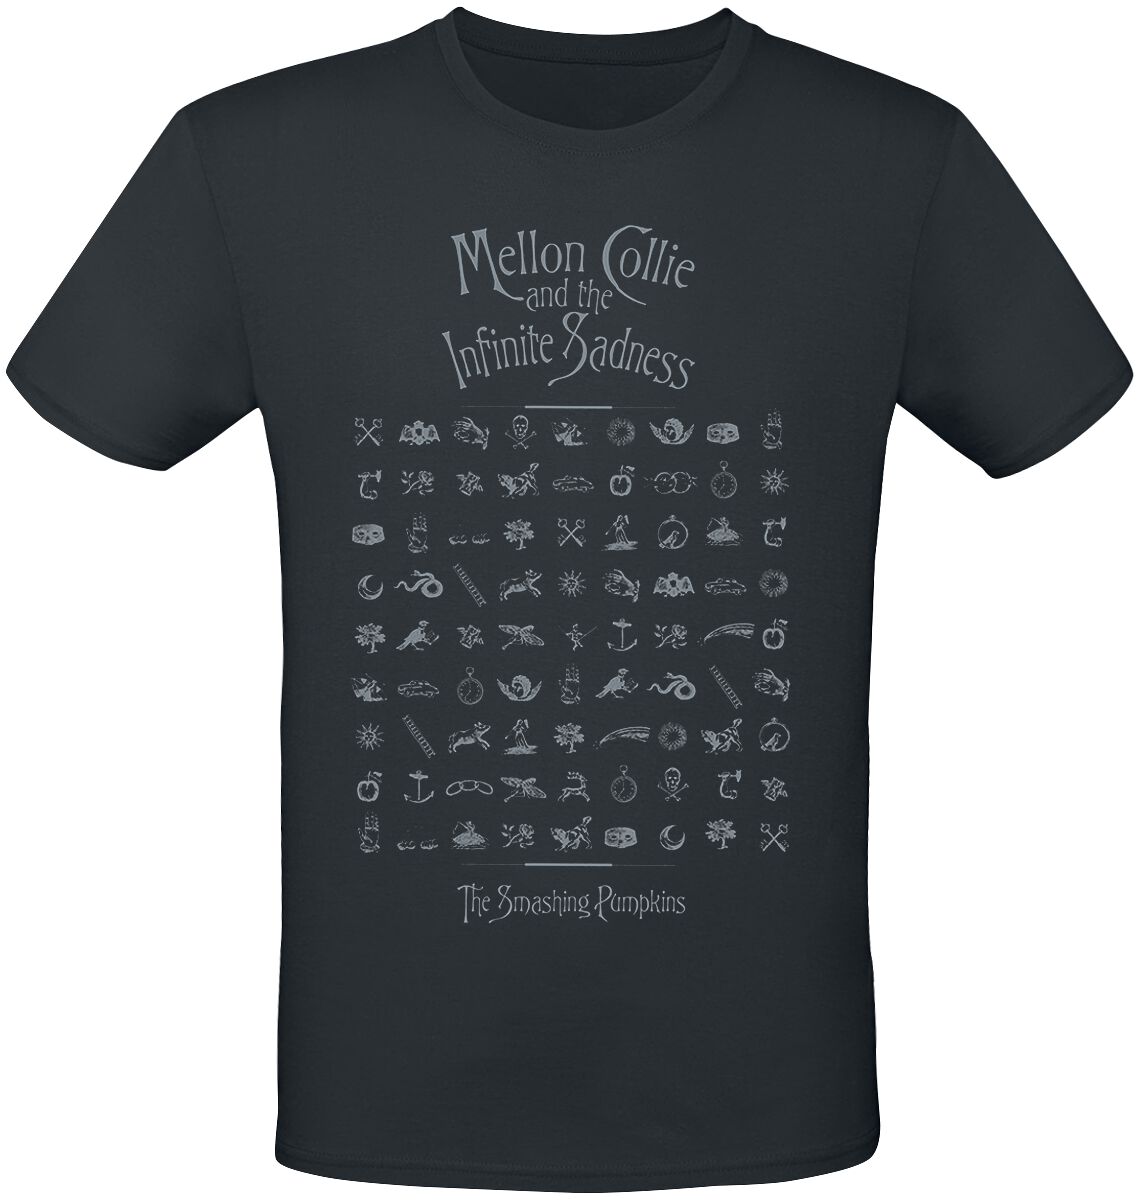 Smashing Pumpkins T-Shirt - MCATIS Symbols - S bis 3XL - für Männer - Größe XL - schwarz  - Lizenziertes Merchandise!